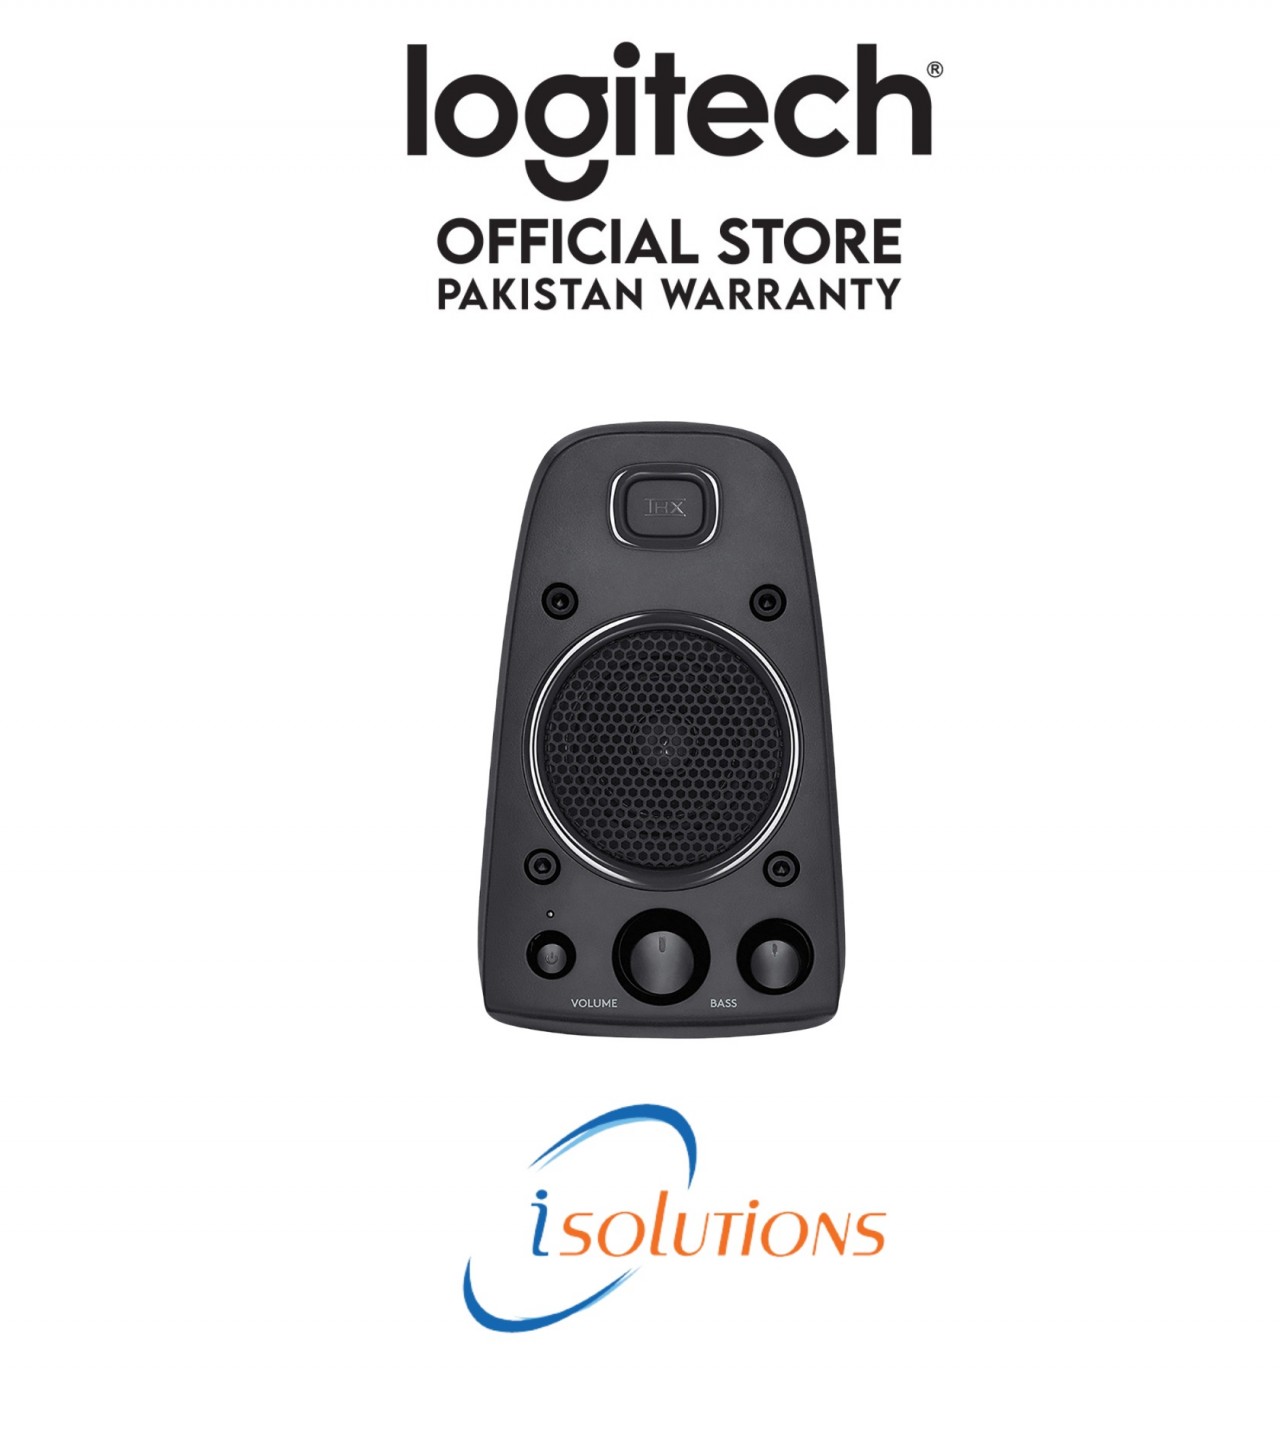 Z625 powerful thx speakers - Logitech Pakistan